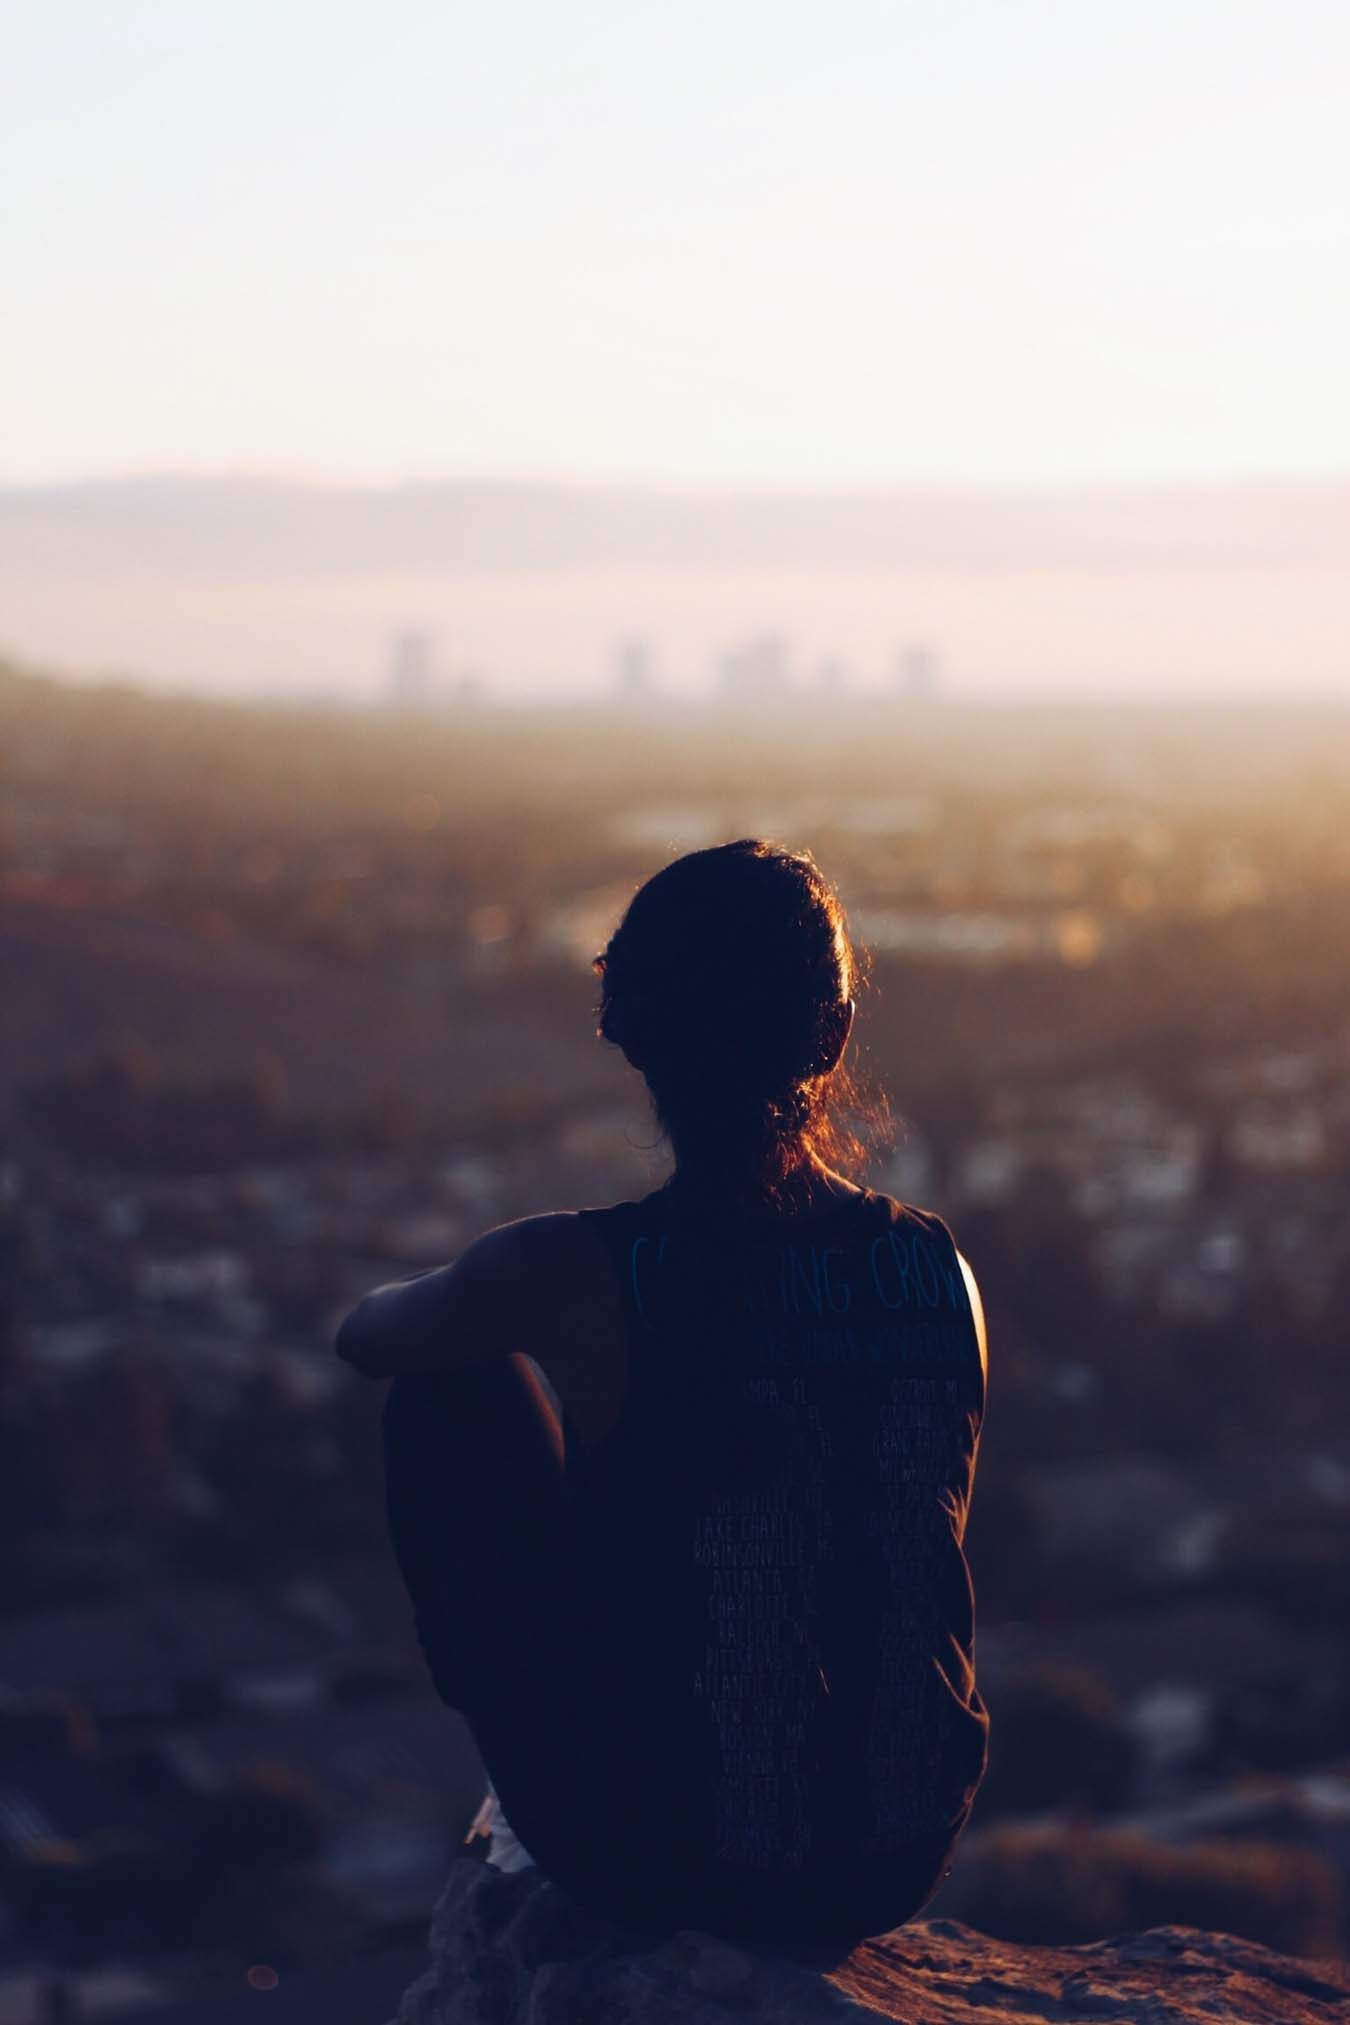 Eine junge Frau von hinten zu sehen, bei Sonnenuntergang, auf einem Stein sitzend während sie auf eine unscharfe Stadt am Horizont blickt